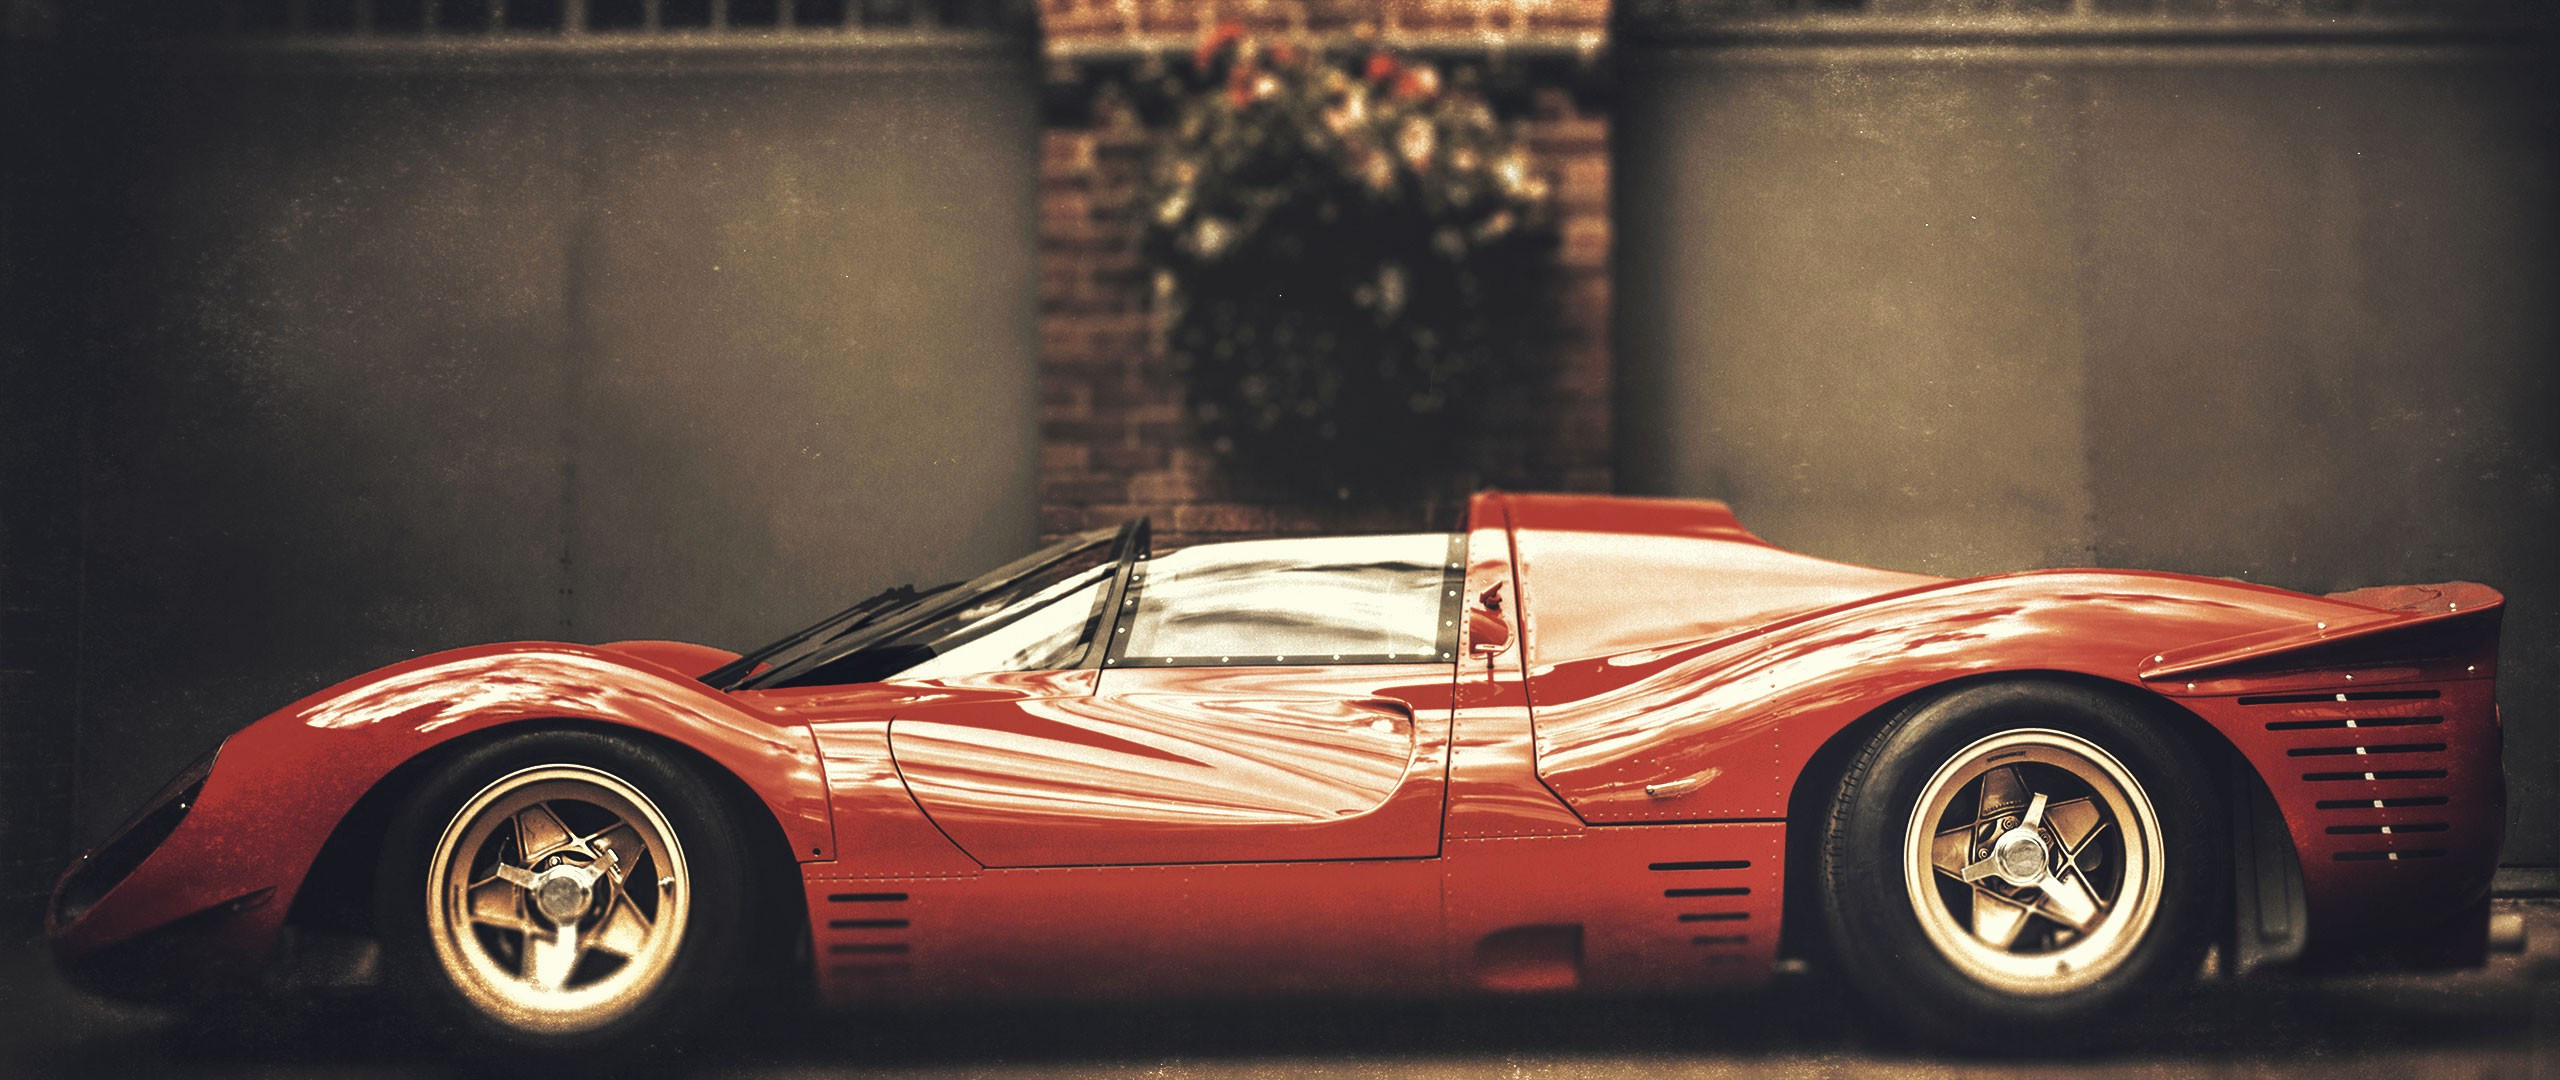 2560x1080 Vintage Car Wallpaper Elegant Ferrari Vintage Car Wallpapers Hd Desktop and  Mobile Backgrounds